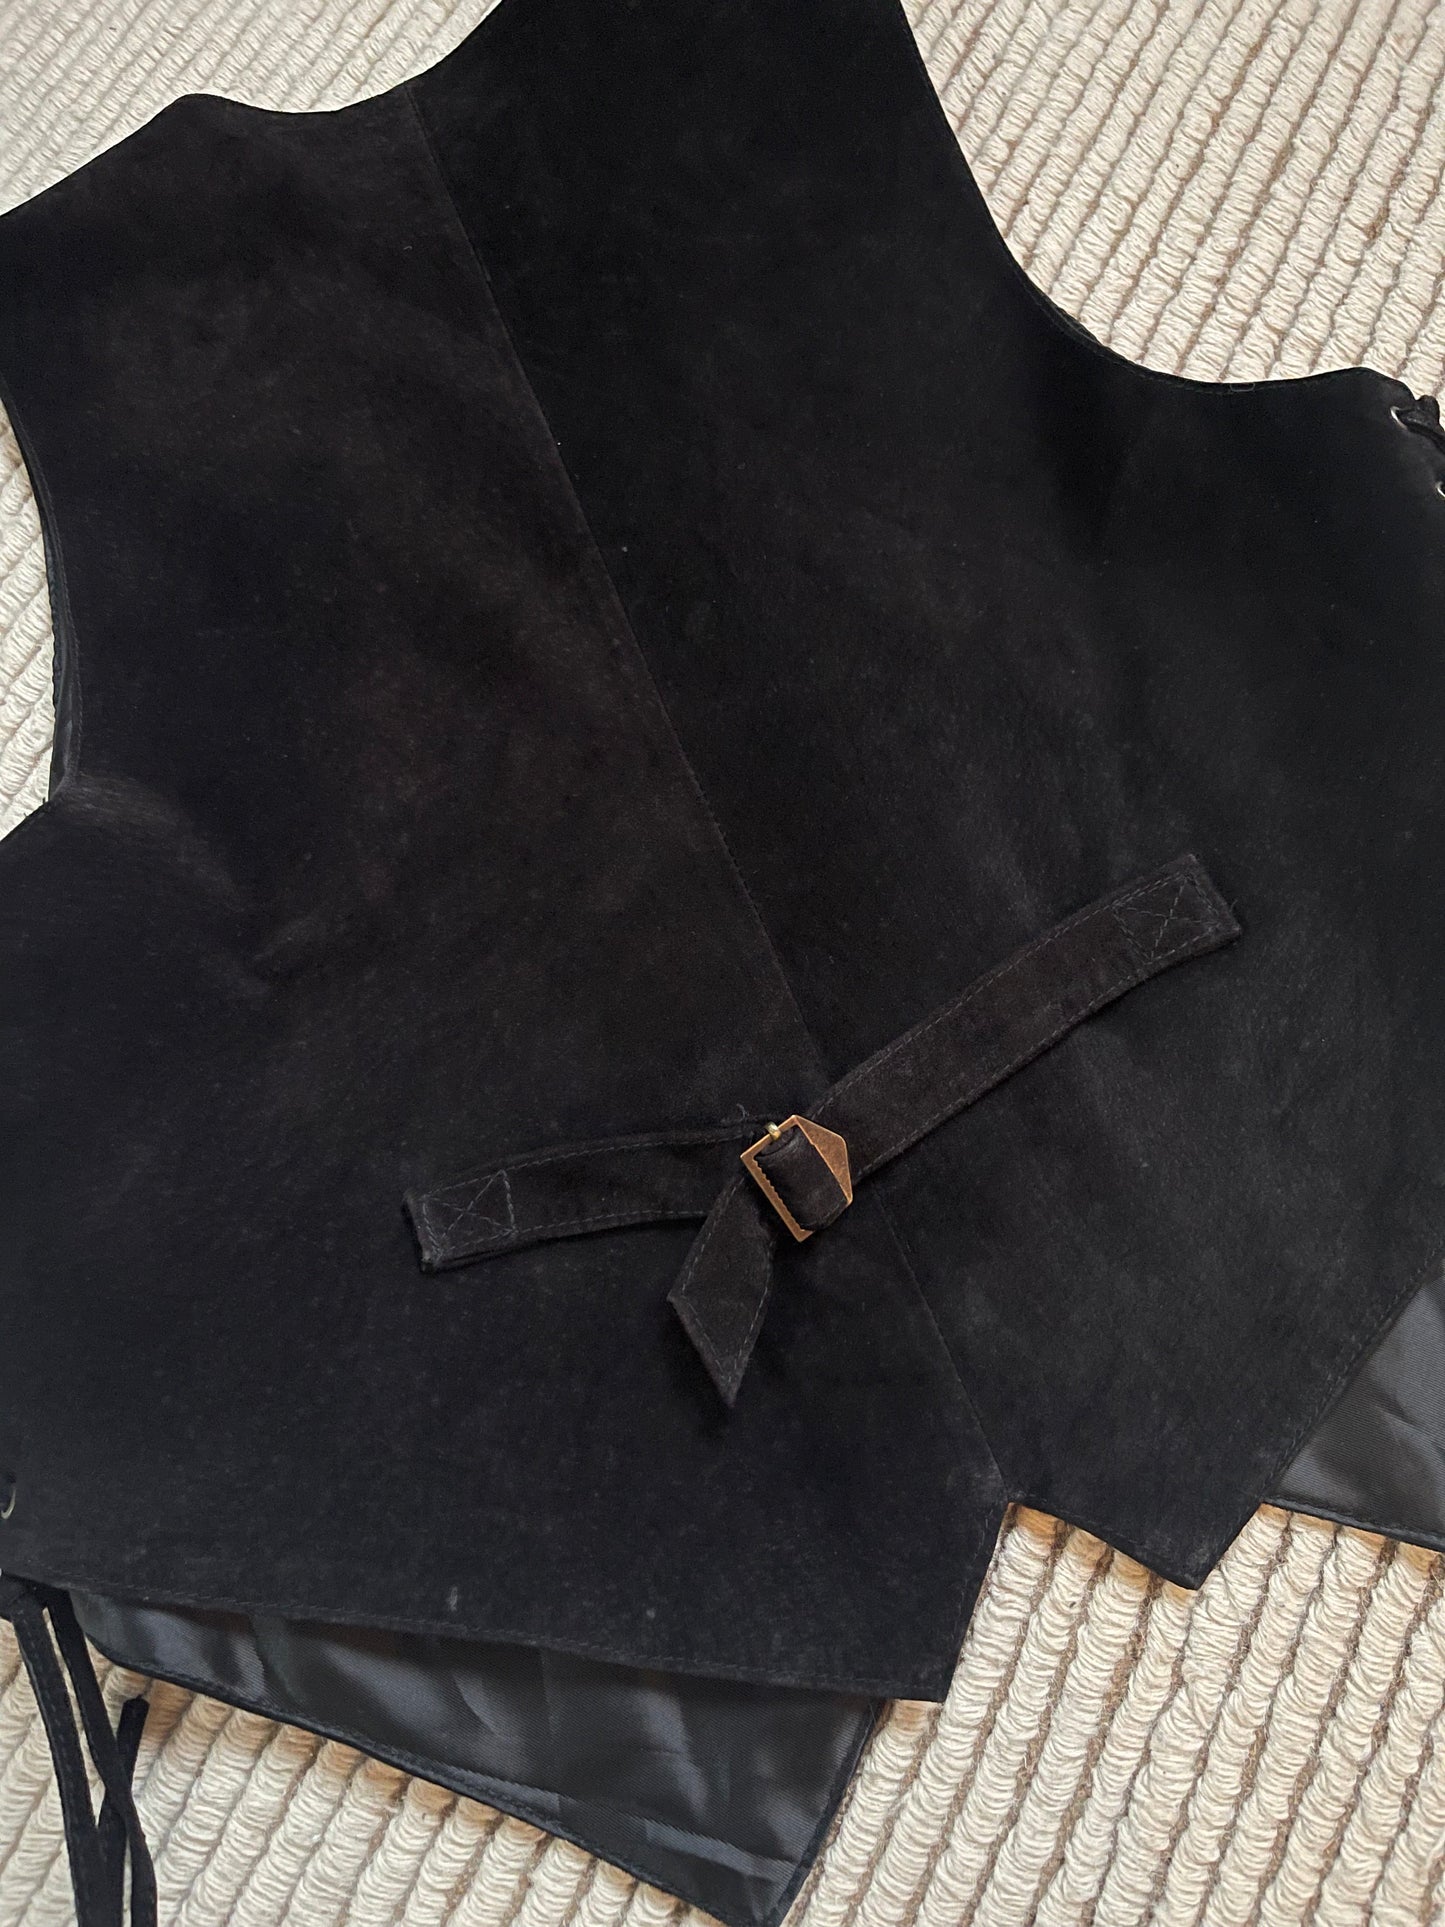 The black leather vest perfetto imperfetto